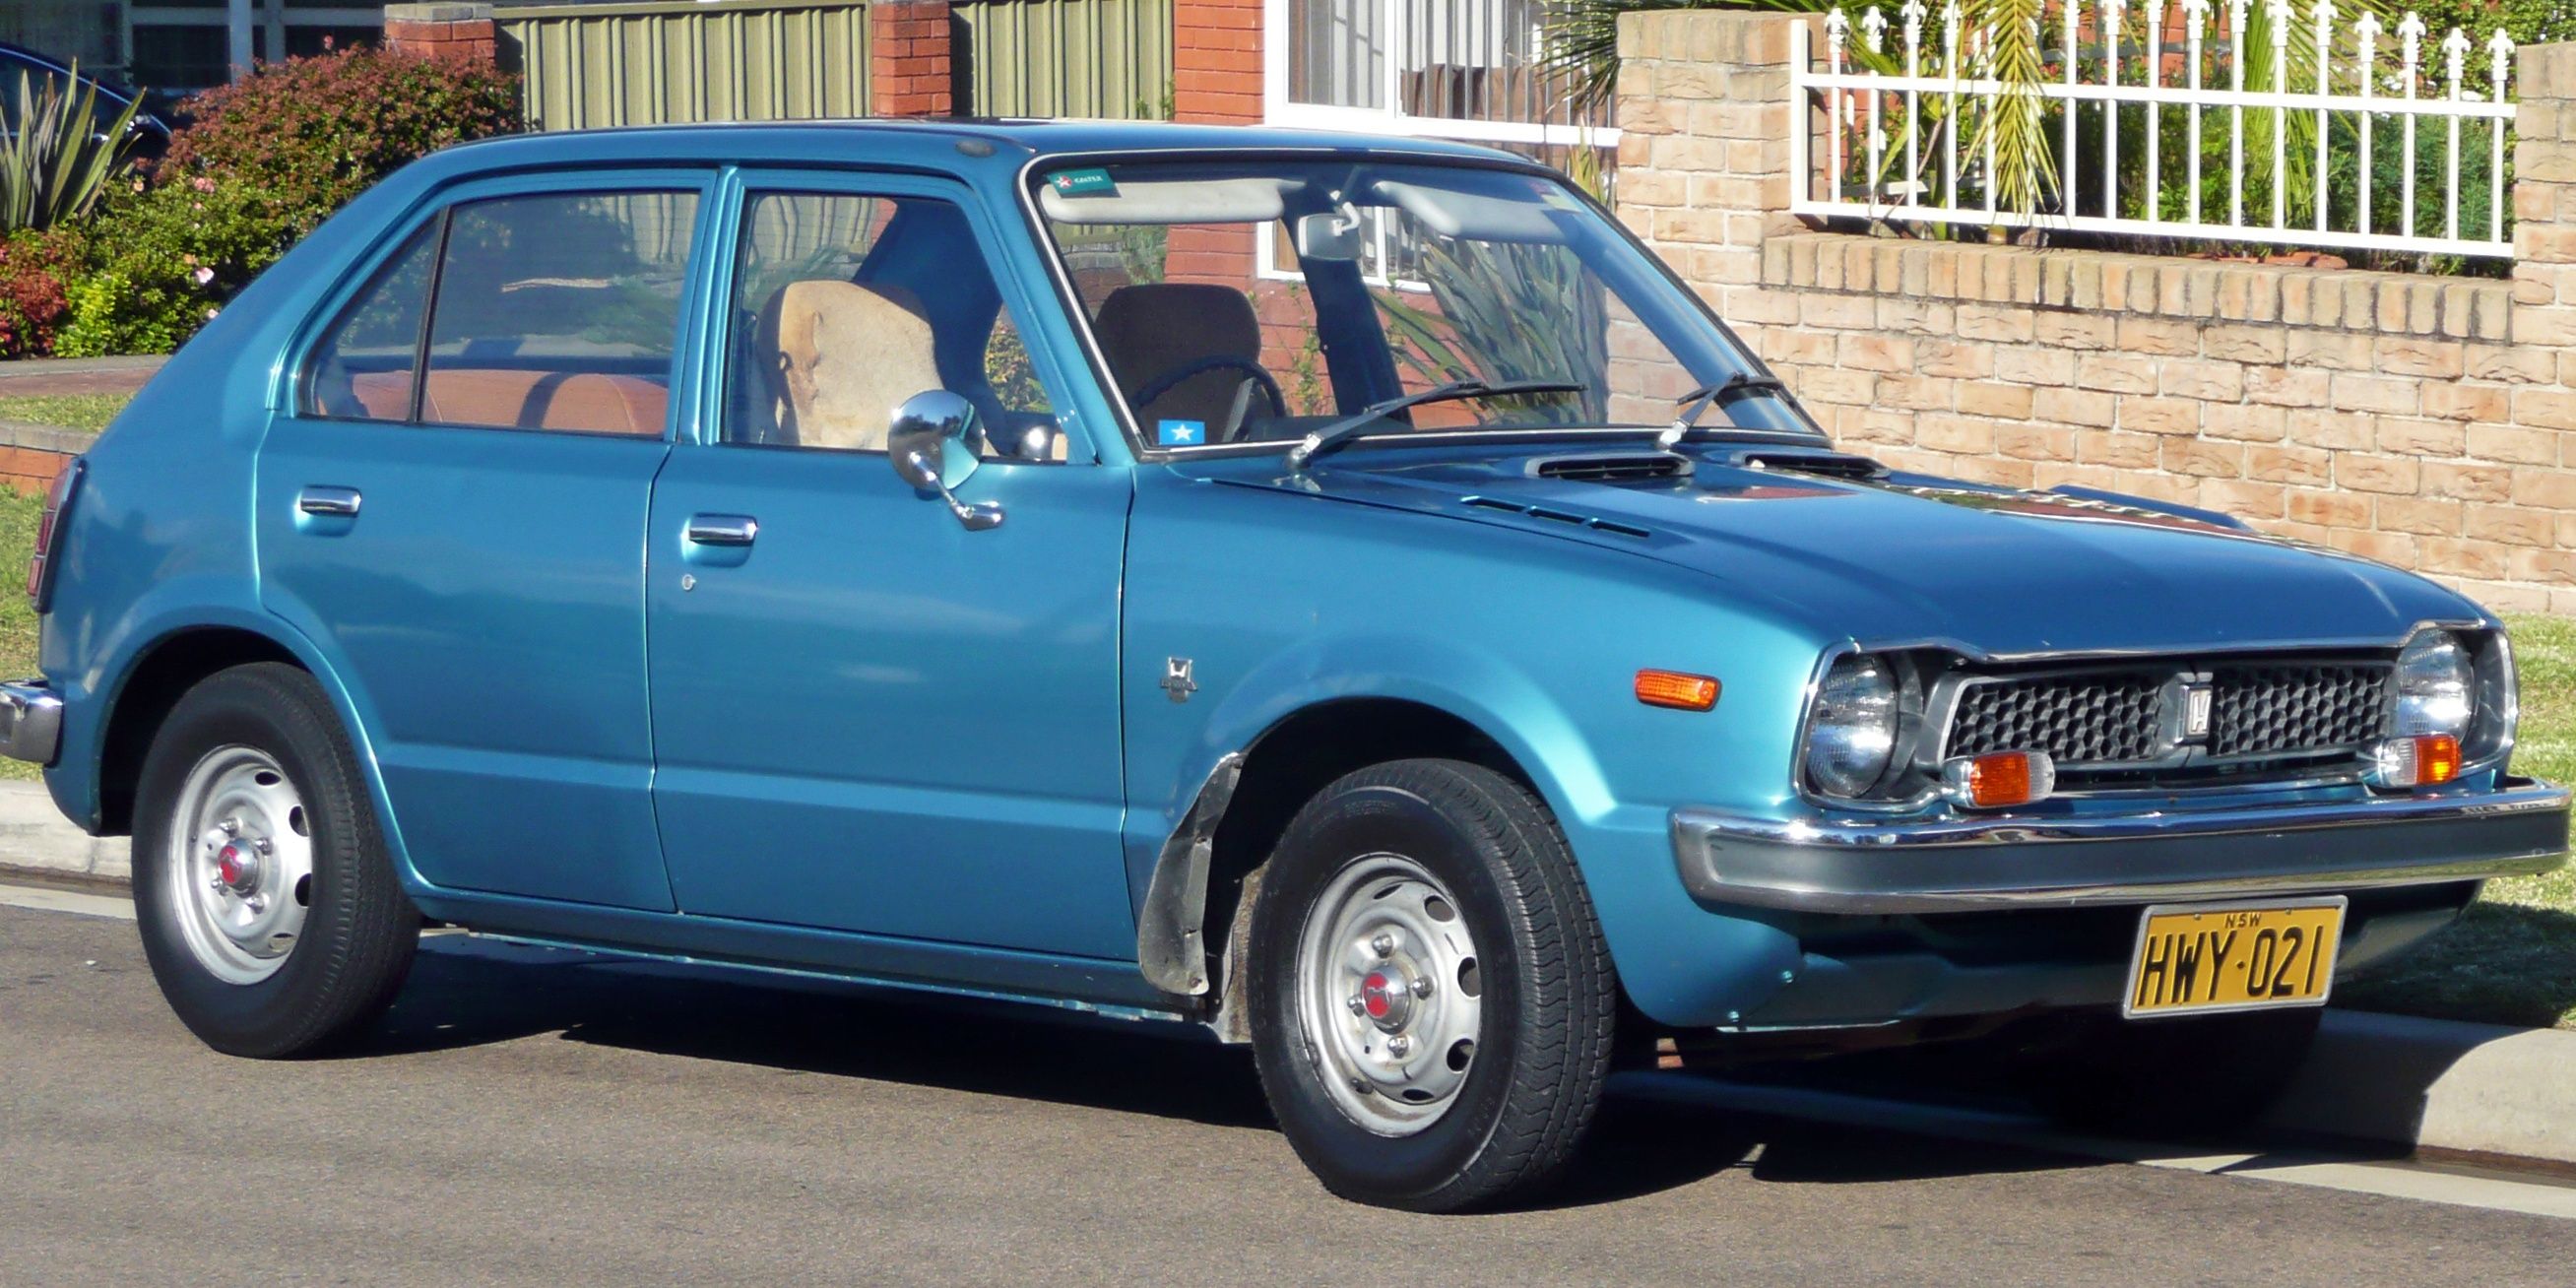 1972 Honda Civic - 1st Generation